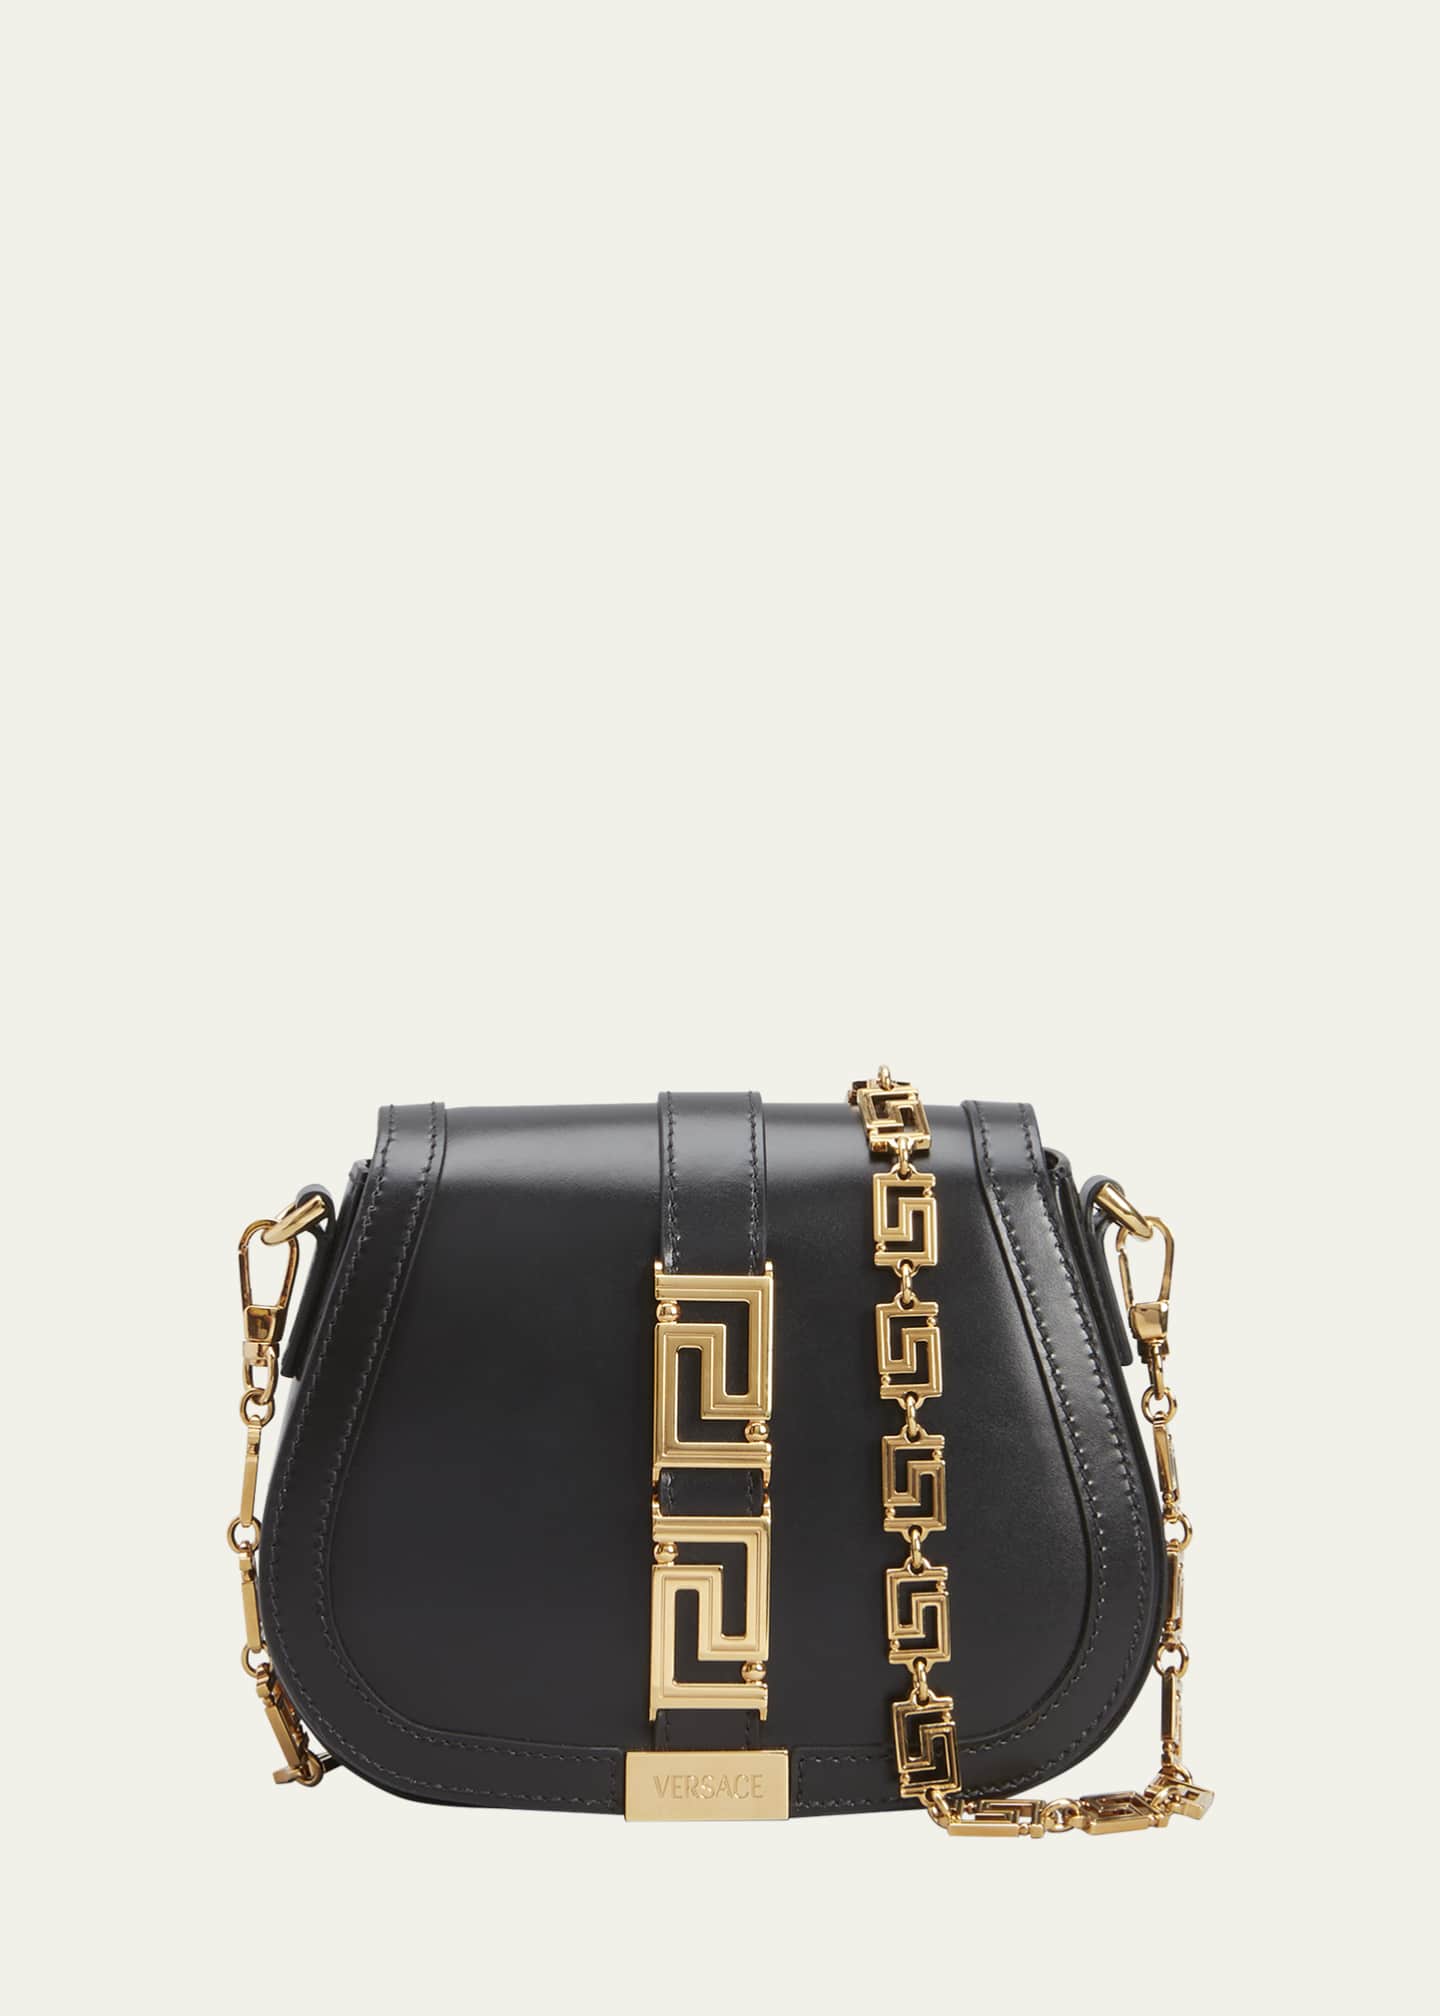 Versace Greca Goddess Medium Leather Shoulder Bag - Black/Versace Gold